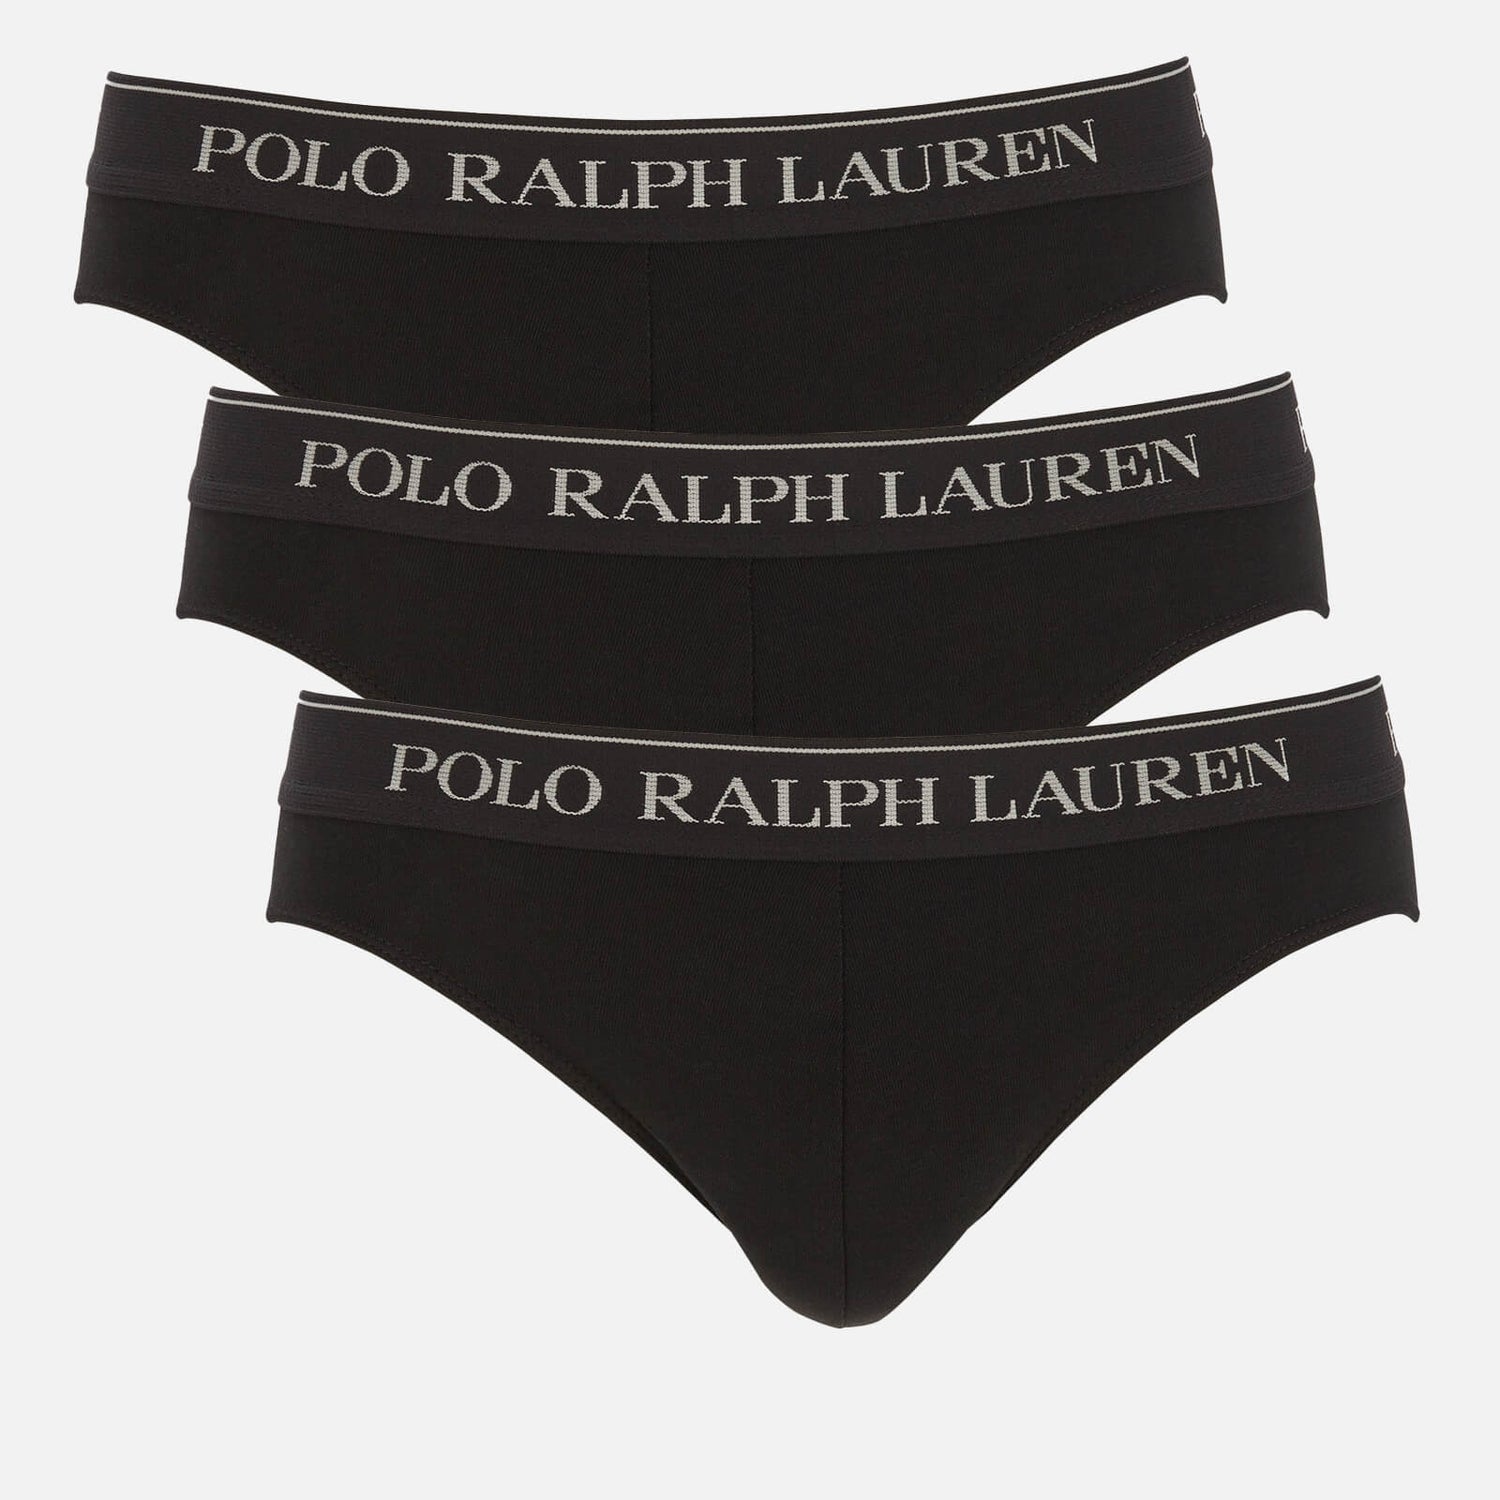 Polo Ralph Lauren Men's 3 Pack Briefs - Black/Multi Waistband | TheHut.com